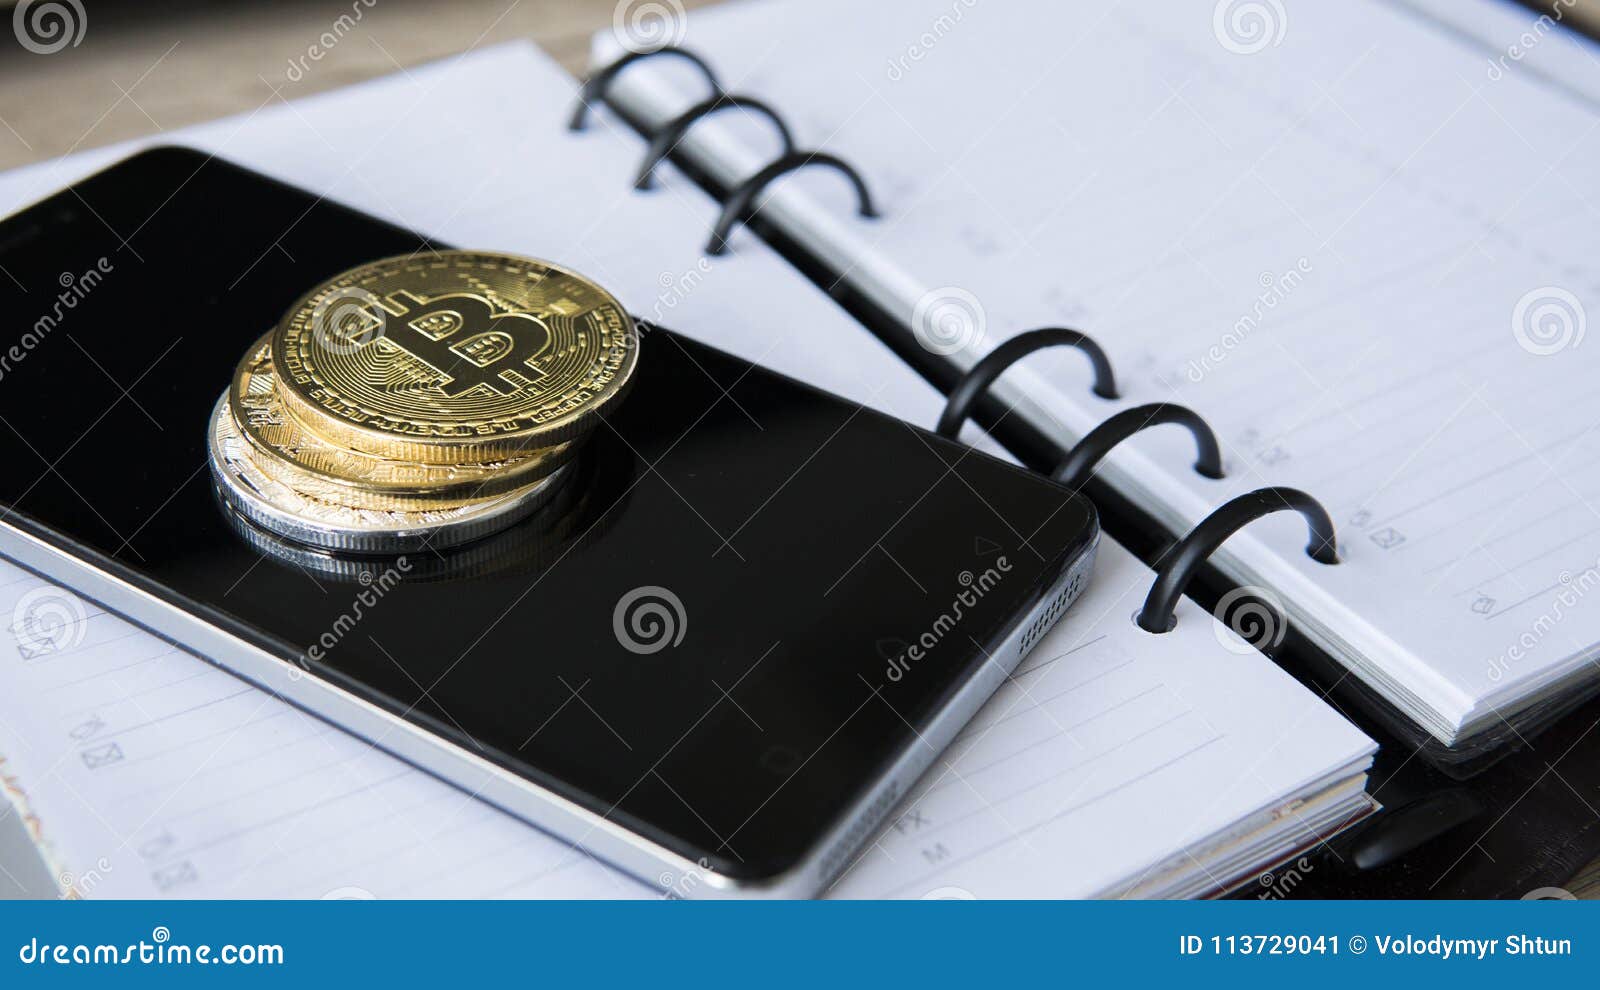 Bitcoin notebook 4/20 bitcoin